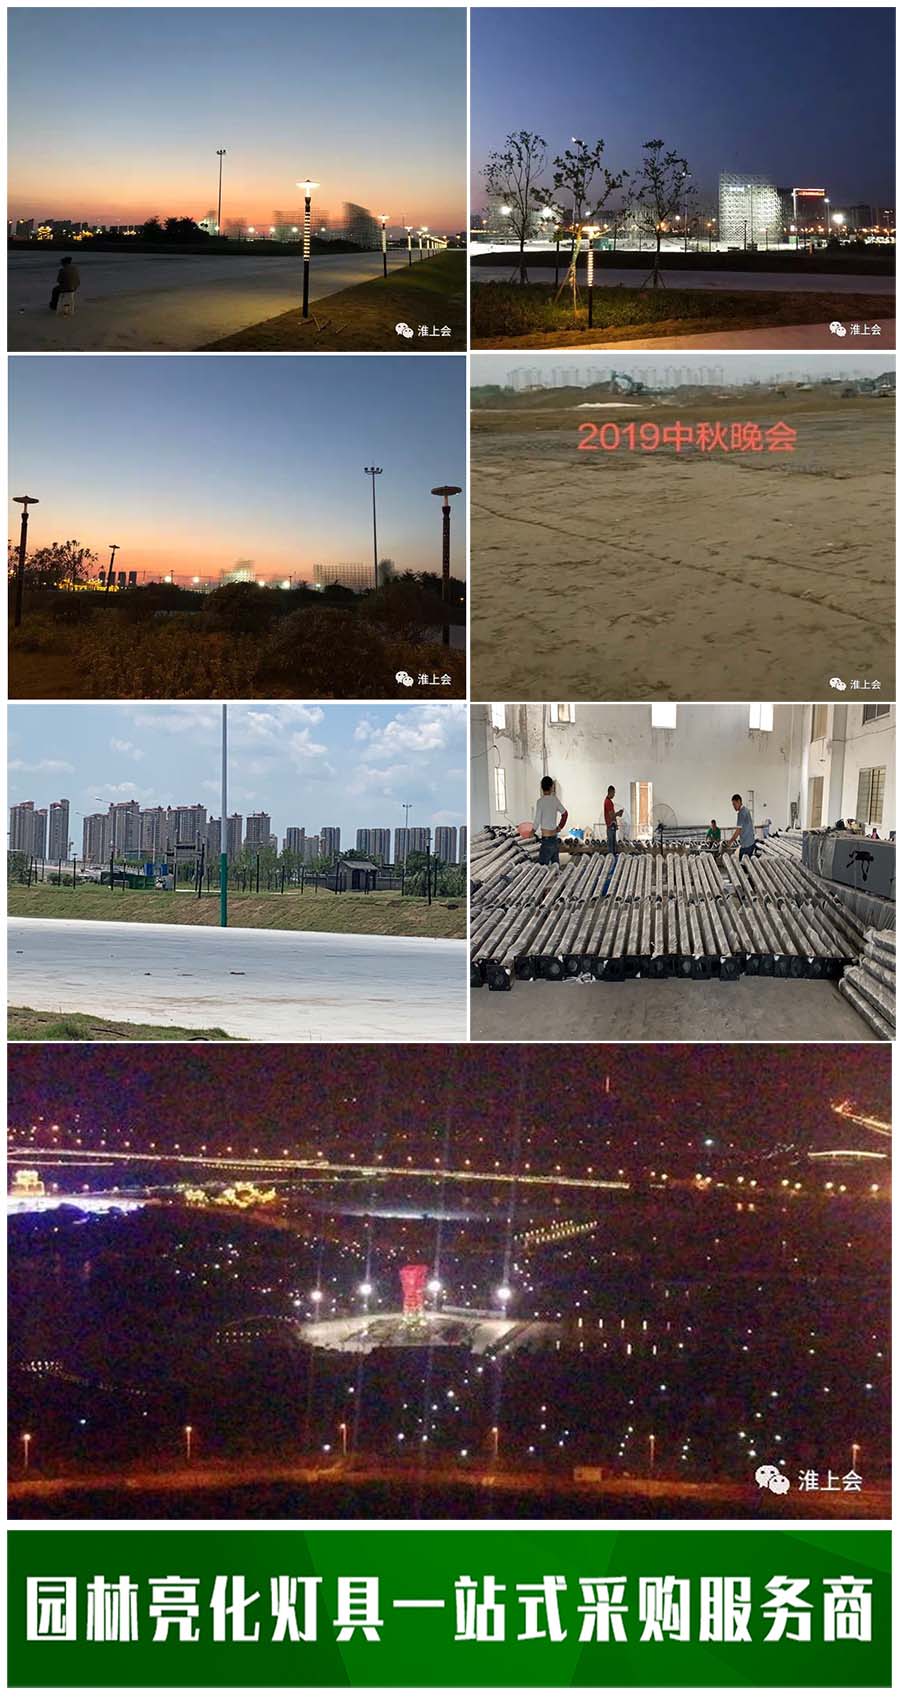 2019年度CCTV中秋晚会主会场照明工程